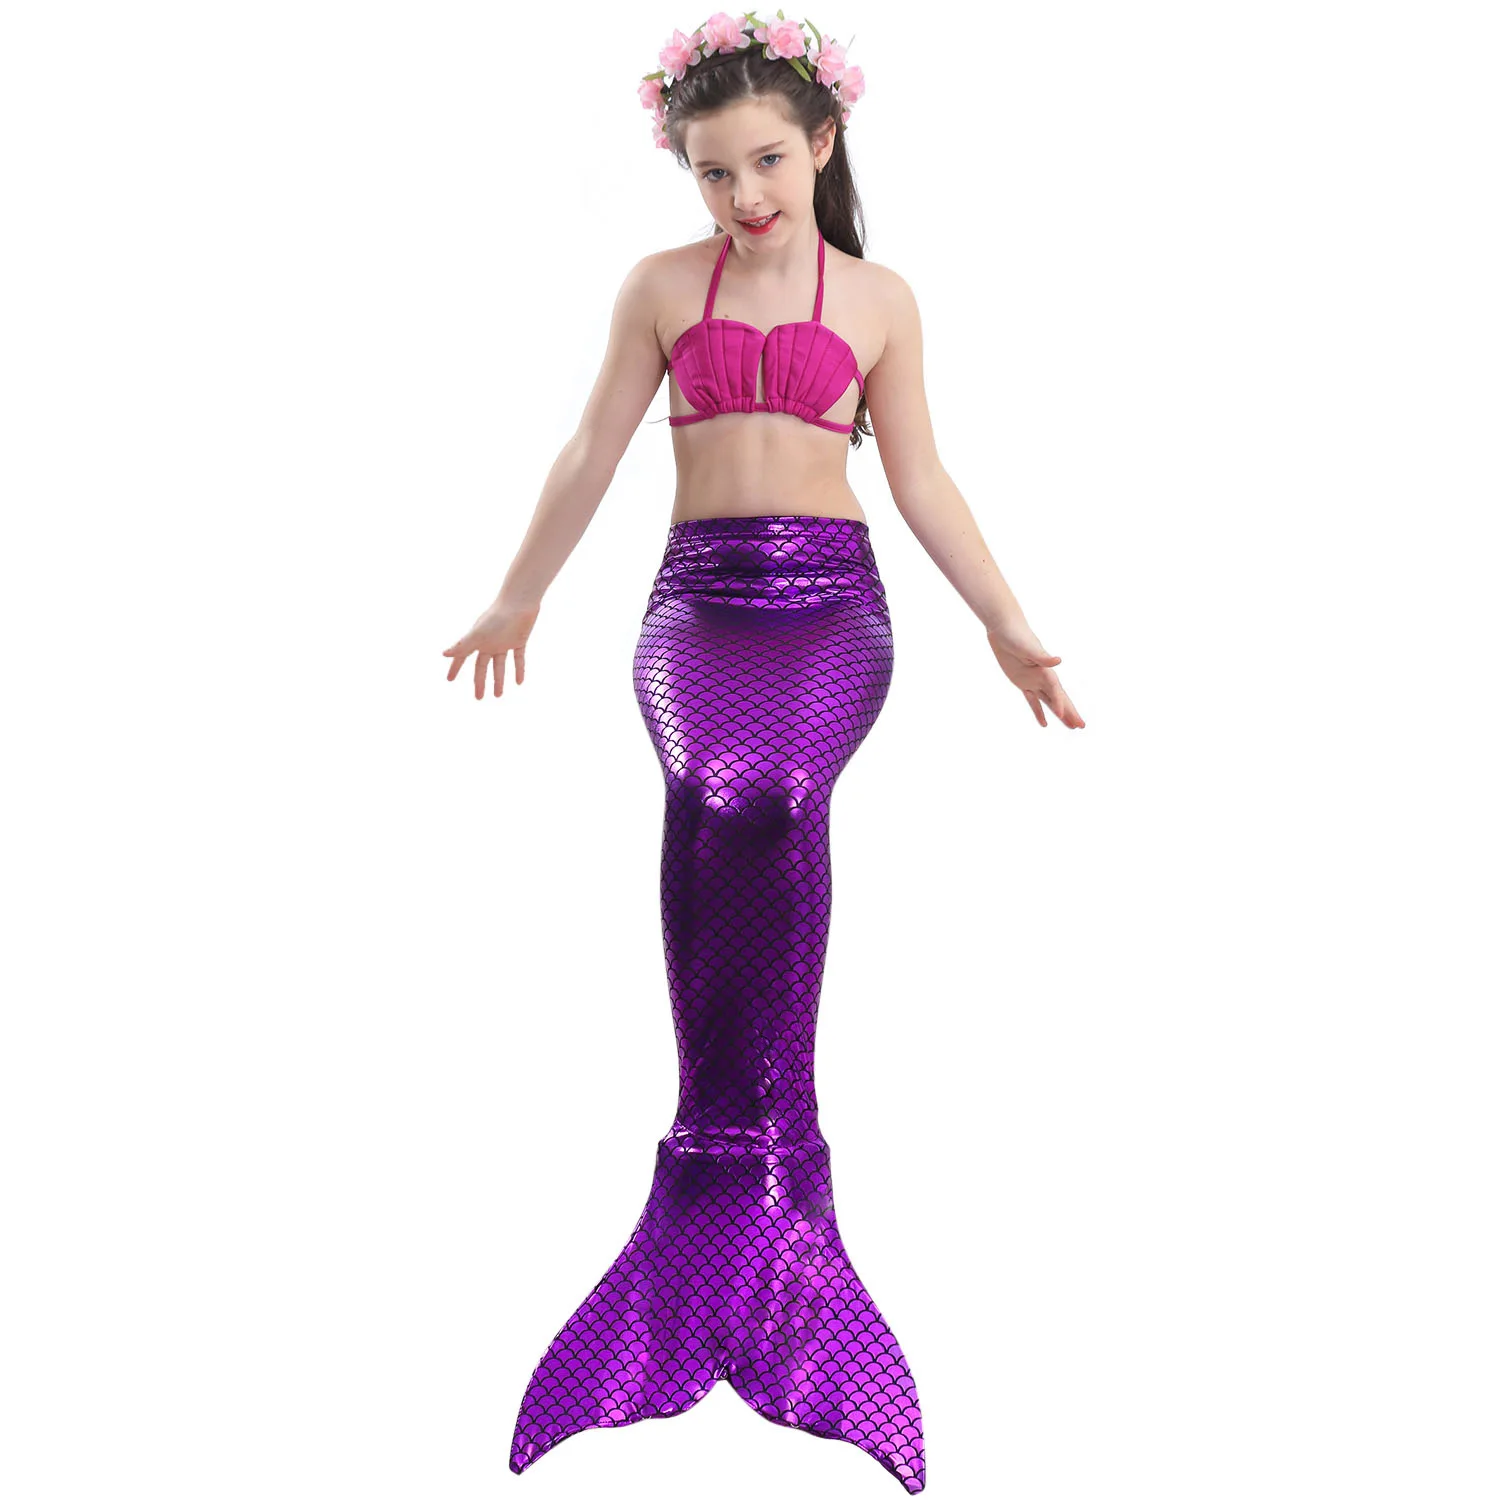 Детский купальник из трех предметов, купальные костюмы русалки, детский пикантный купальник-бикини, купальный костюм